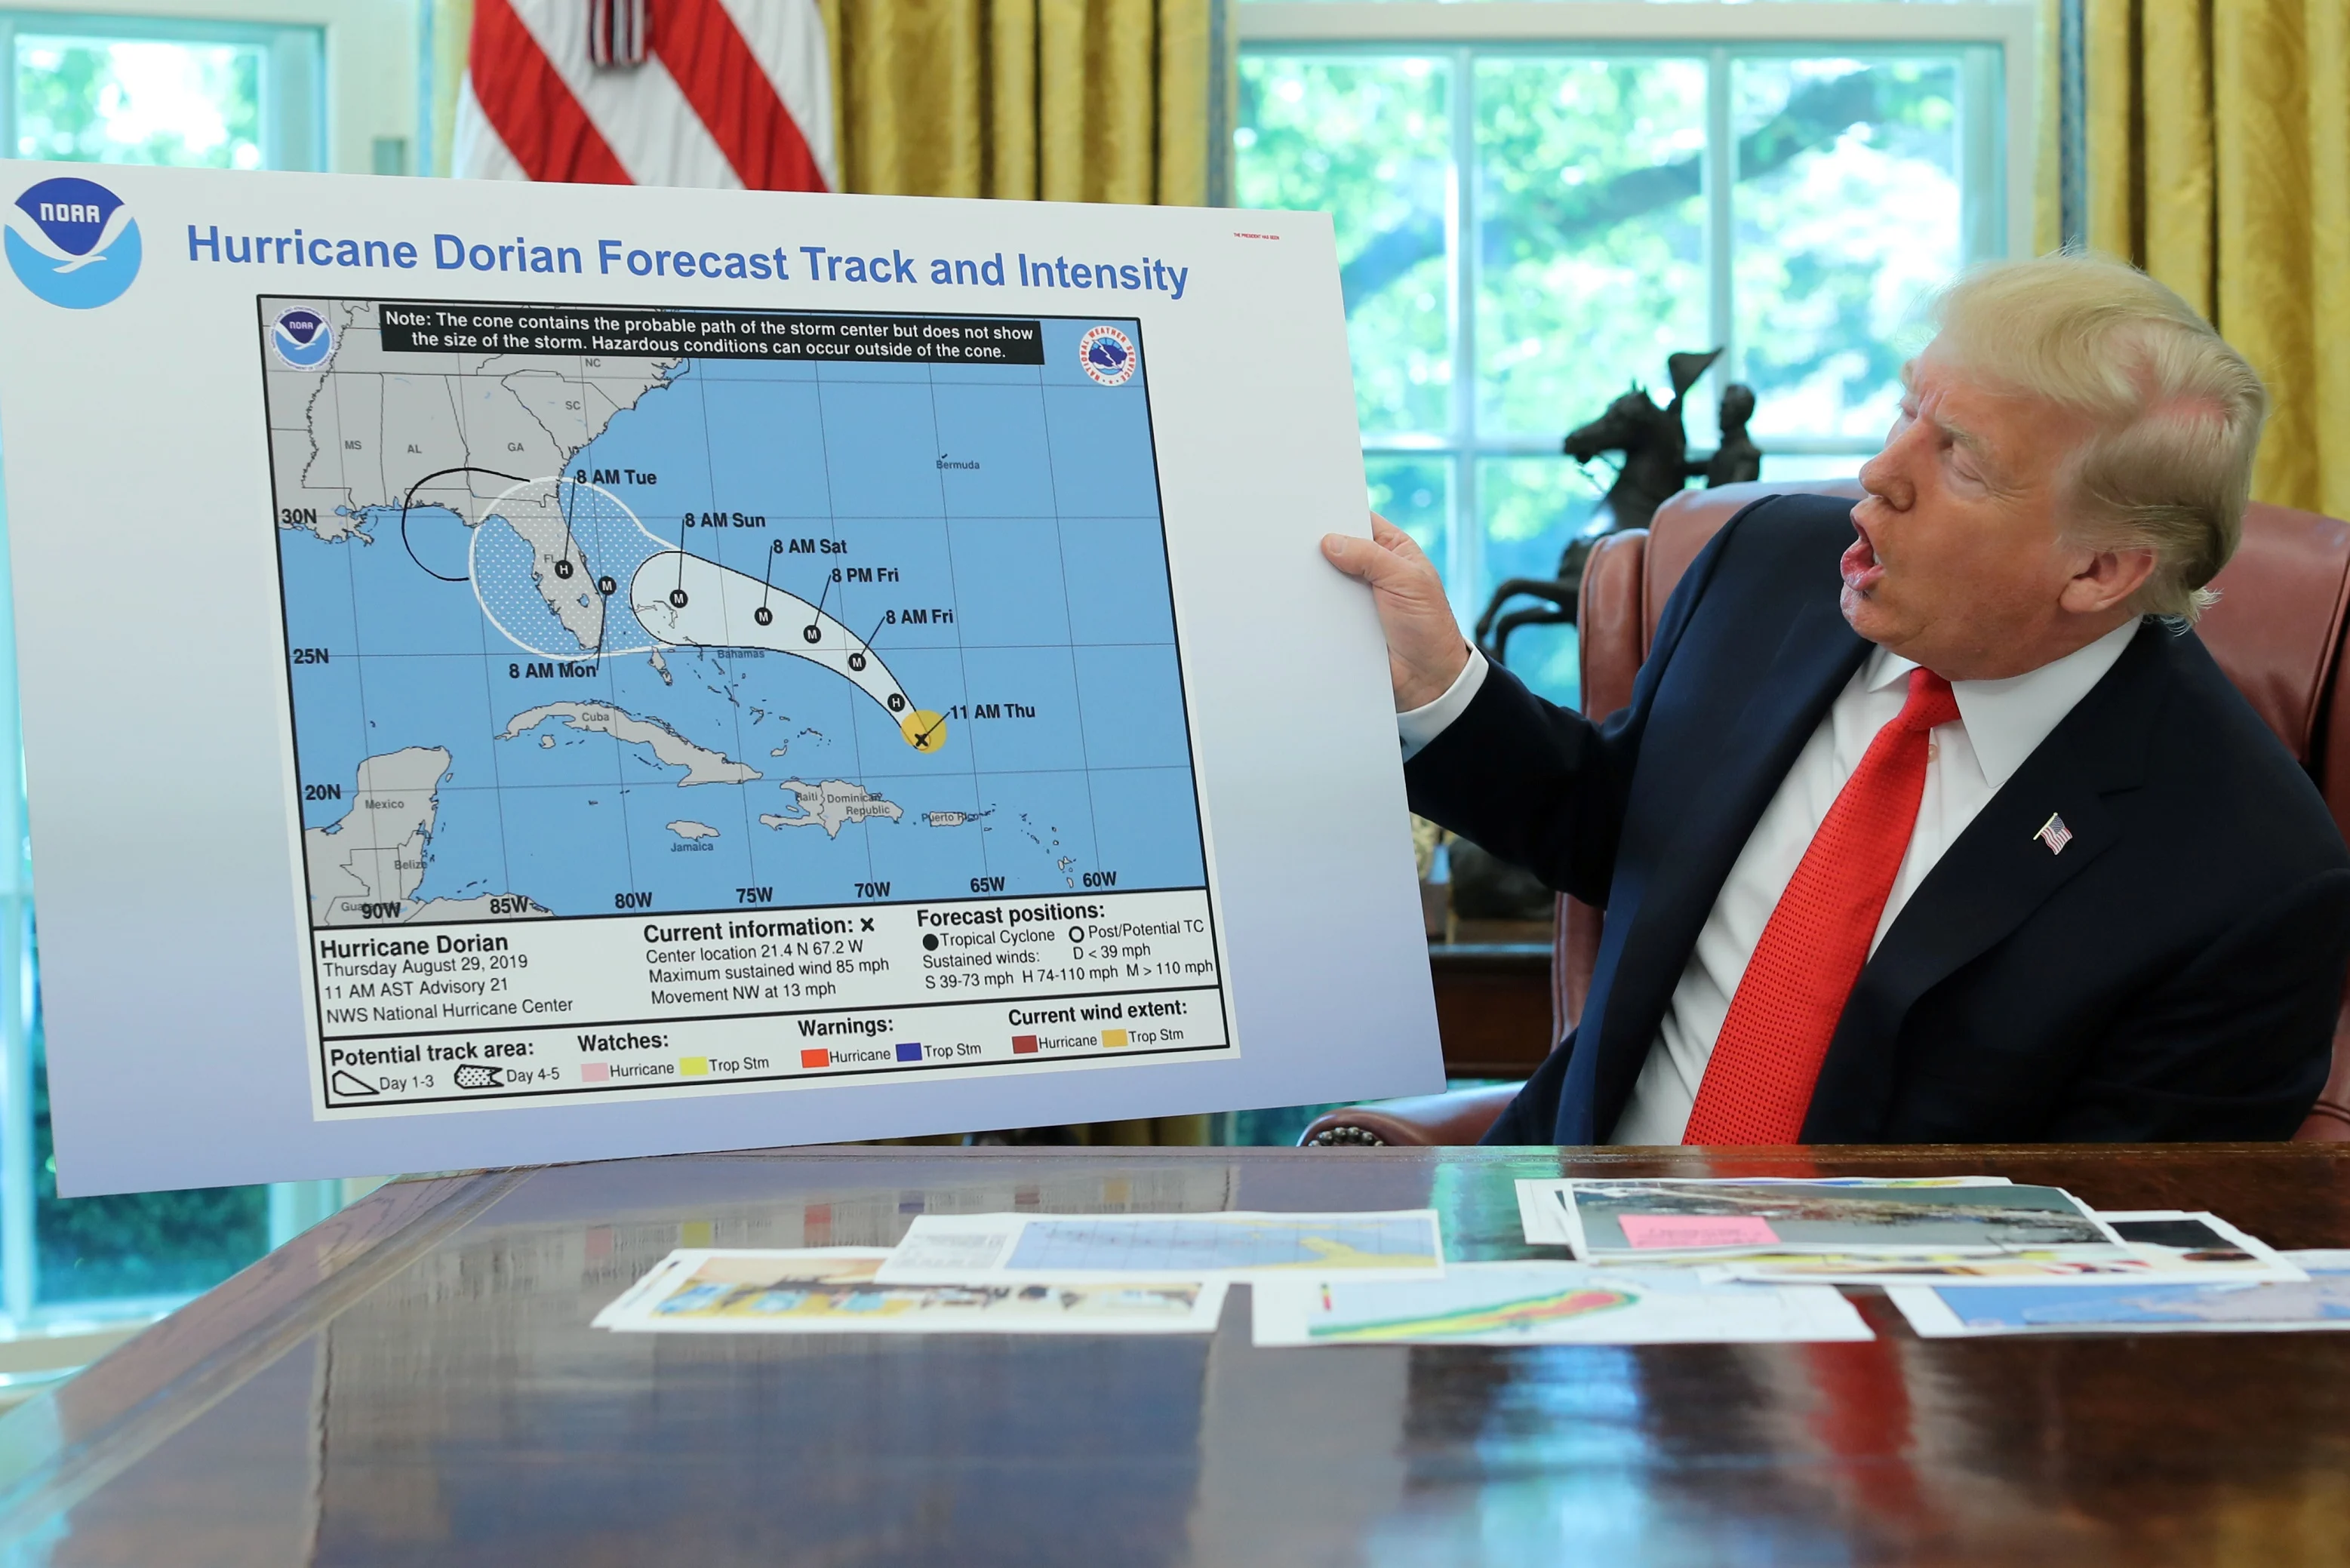 נשיא ארצות הברית דונלד טראמפ עם מפת ההתקדמות של דוריאן